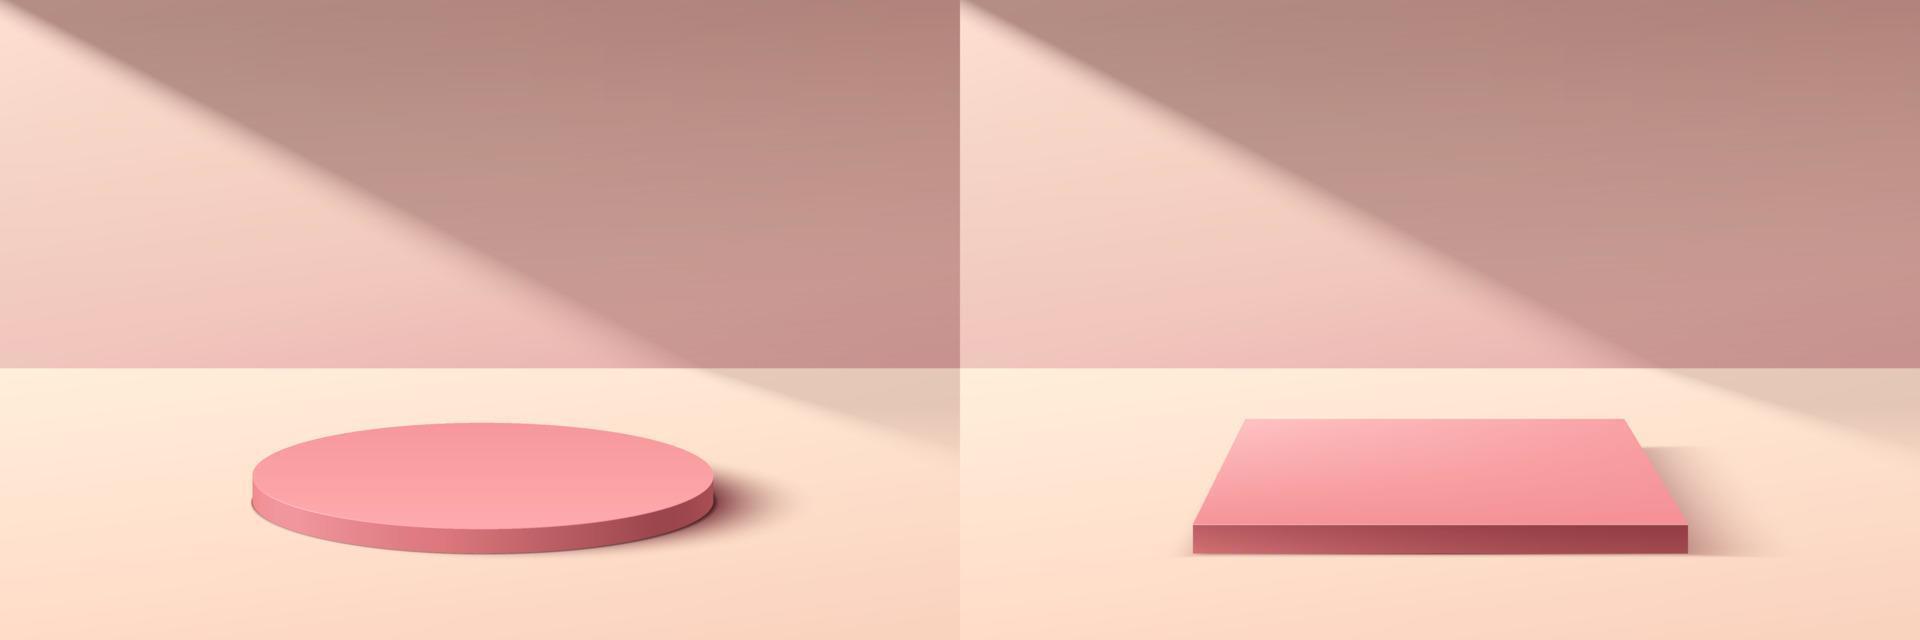 conjunto de cilindro rosa 3d abstracto y podio de pedestal de cubo con escena de pared mínima rosa pastel en la sombra. colección de plataforma geométrica de representación vectorial para la presentación de productos cosméticos. vector